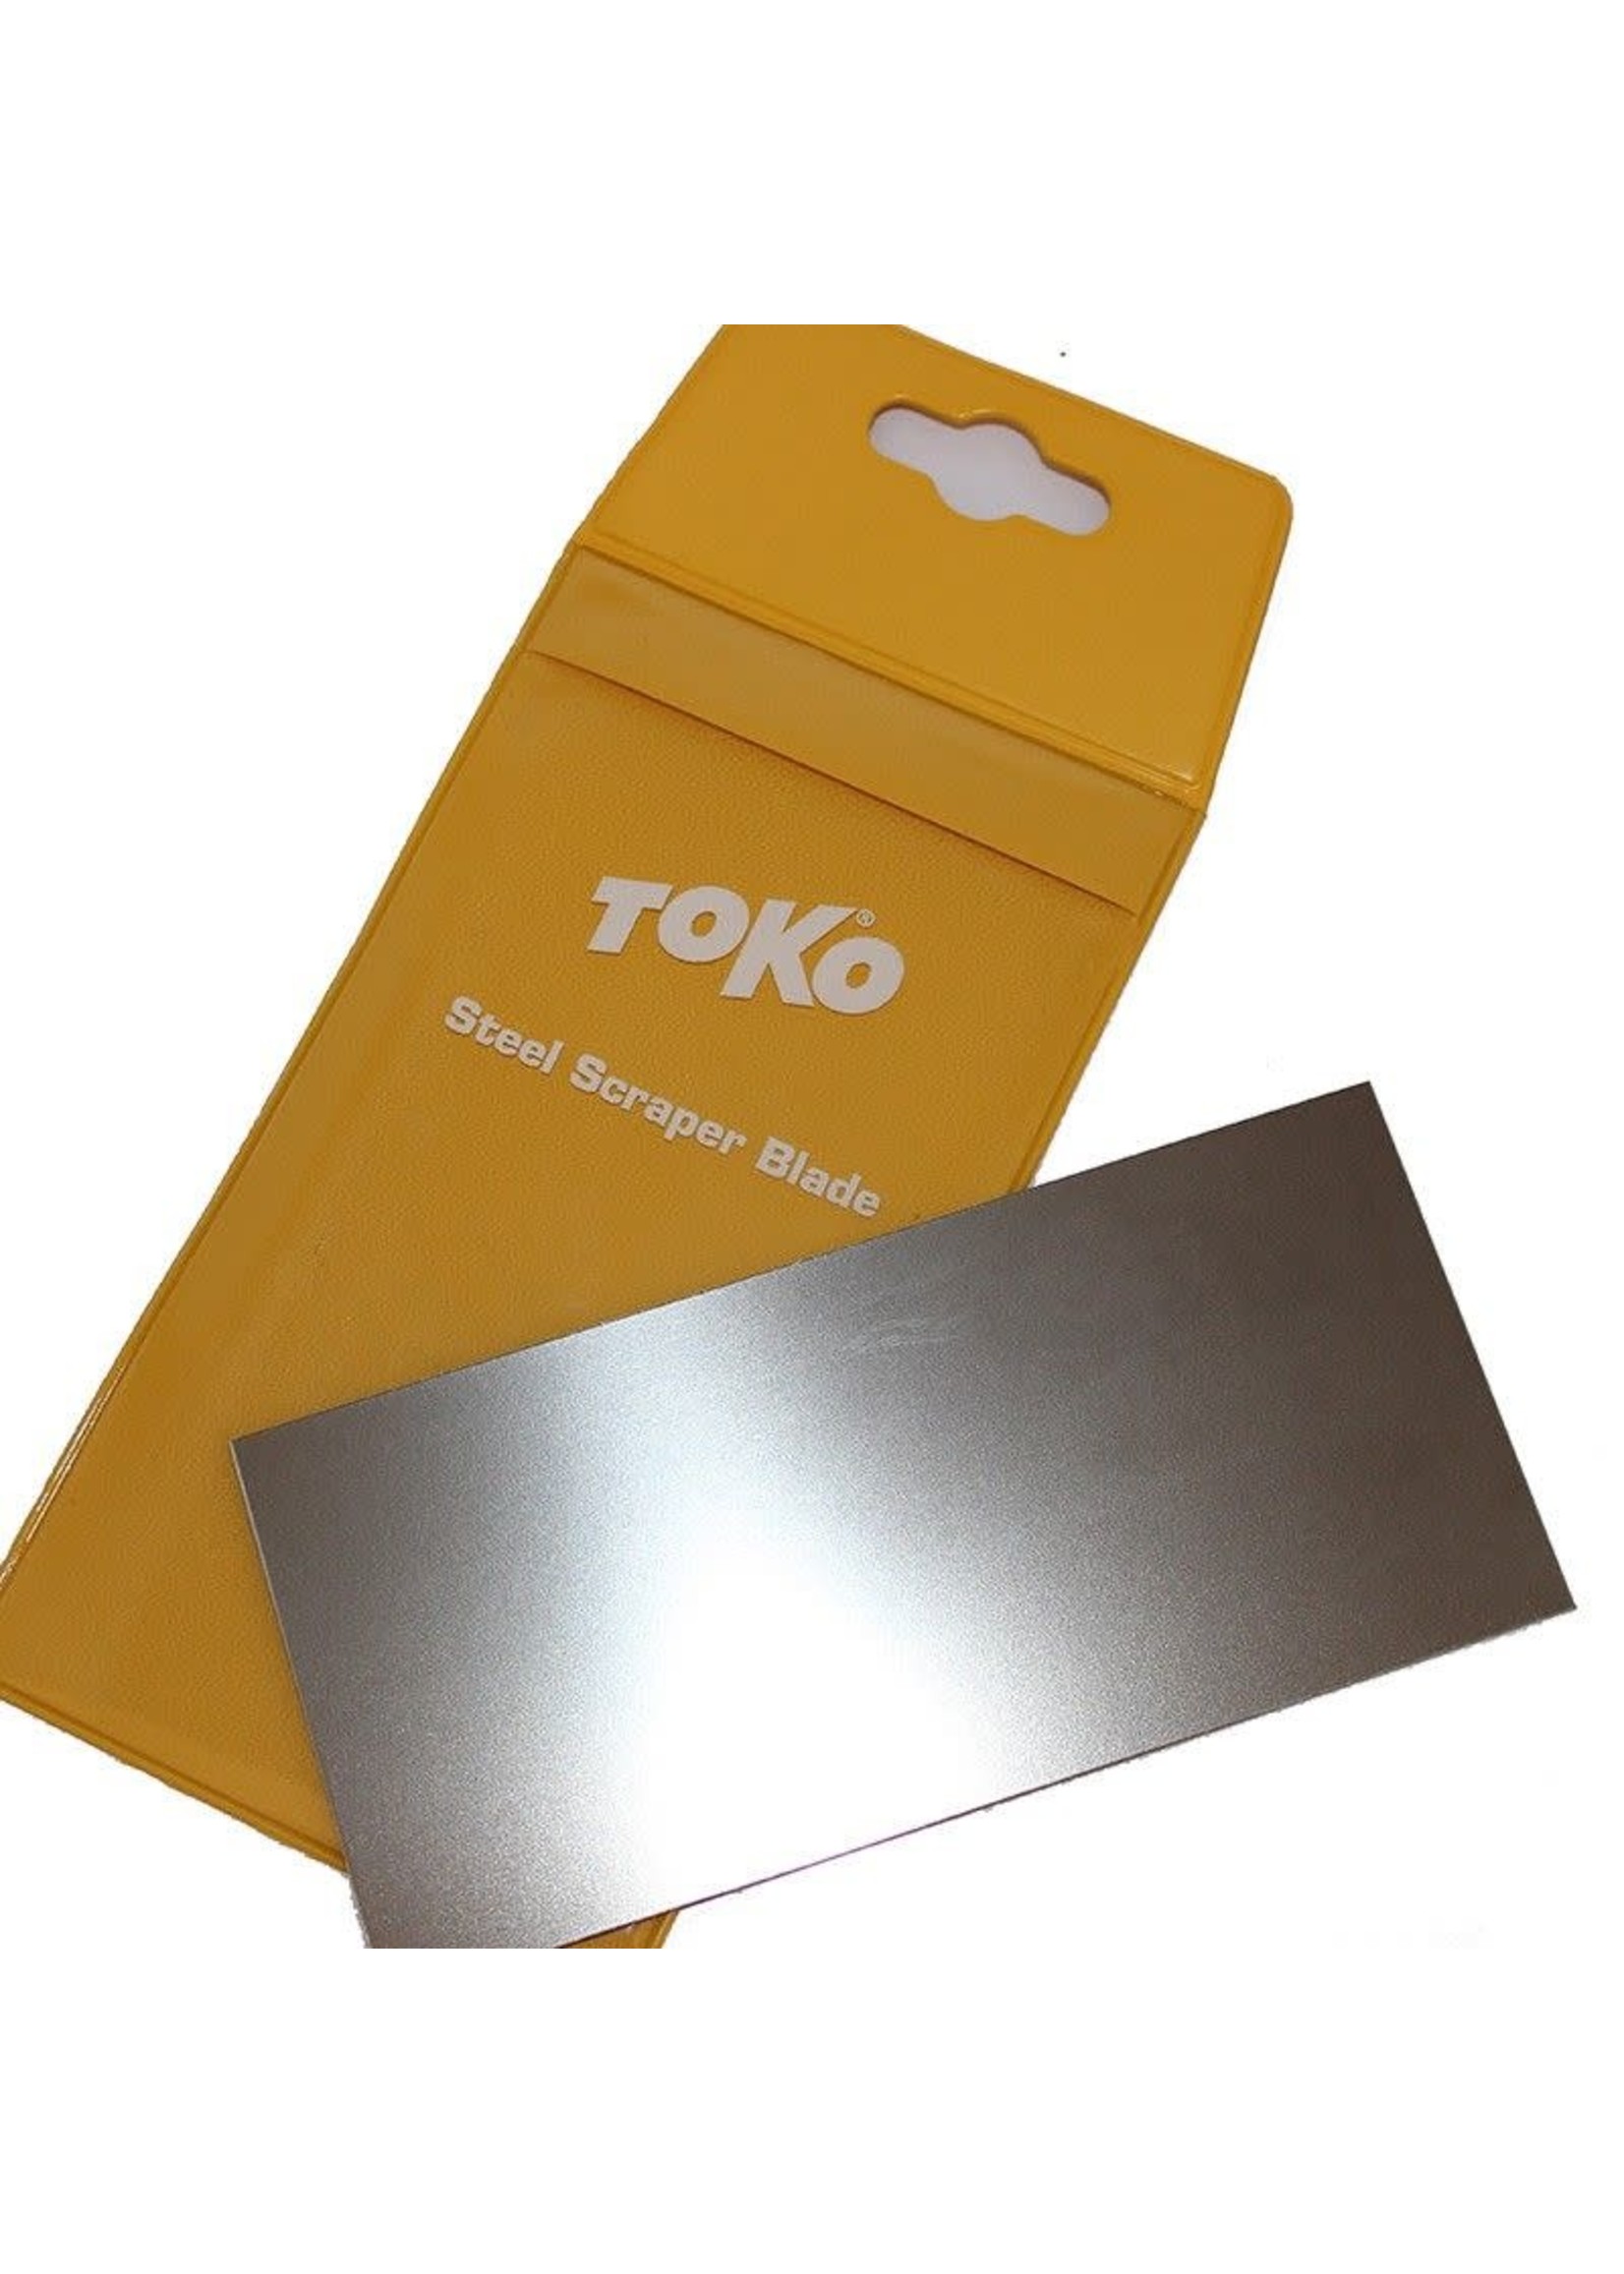 Toko Toko Steel Scraper Blade